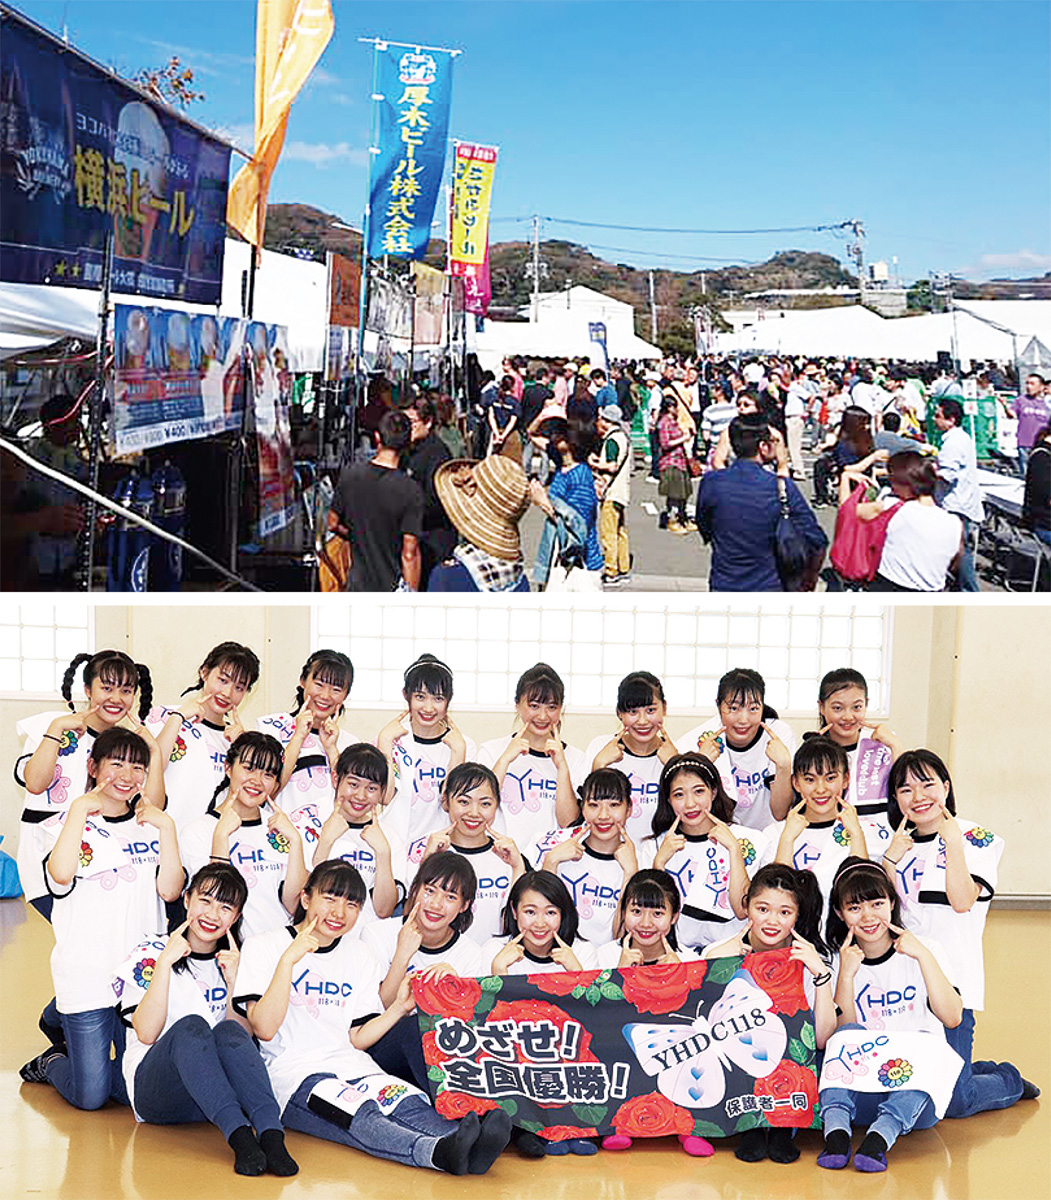 商工会議所青年部 ビール祭で被災地支援 来週末 市役所駐車場で 鎌倉 タウンニュース